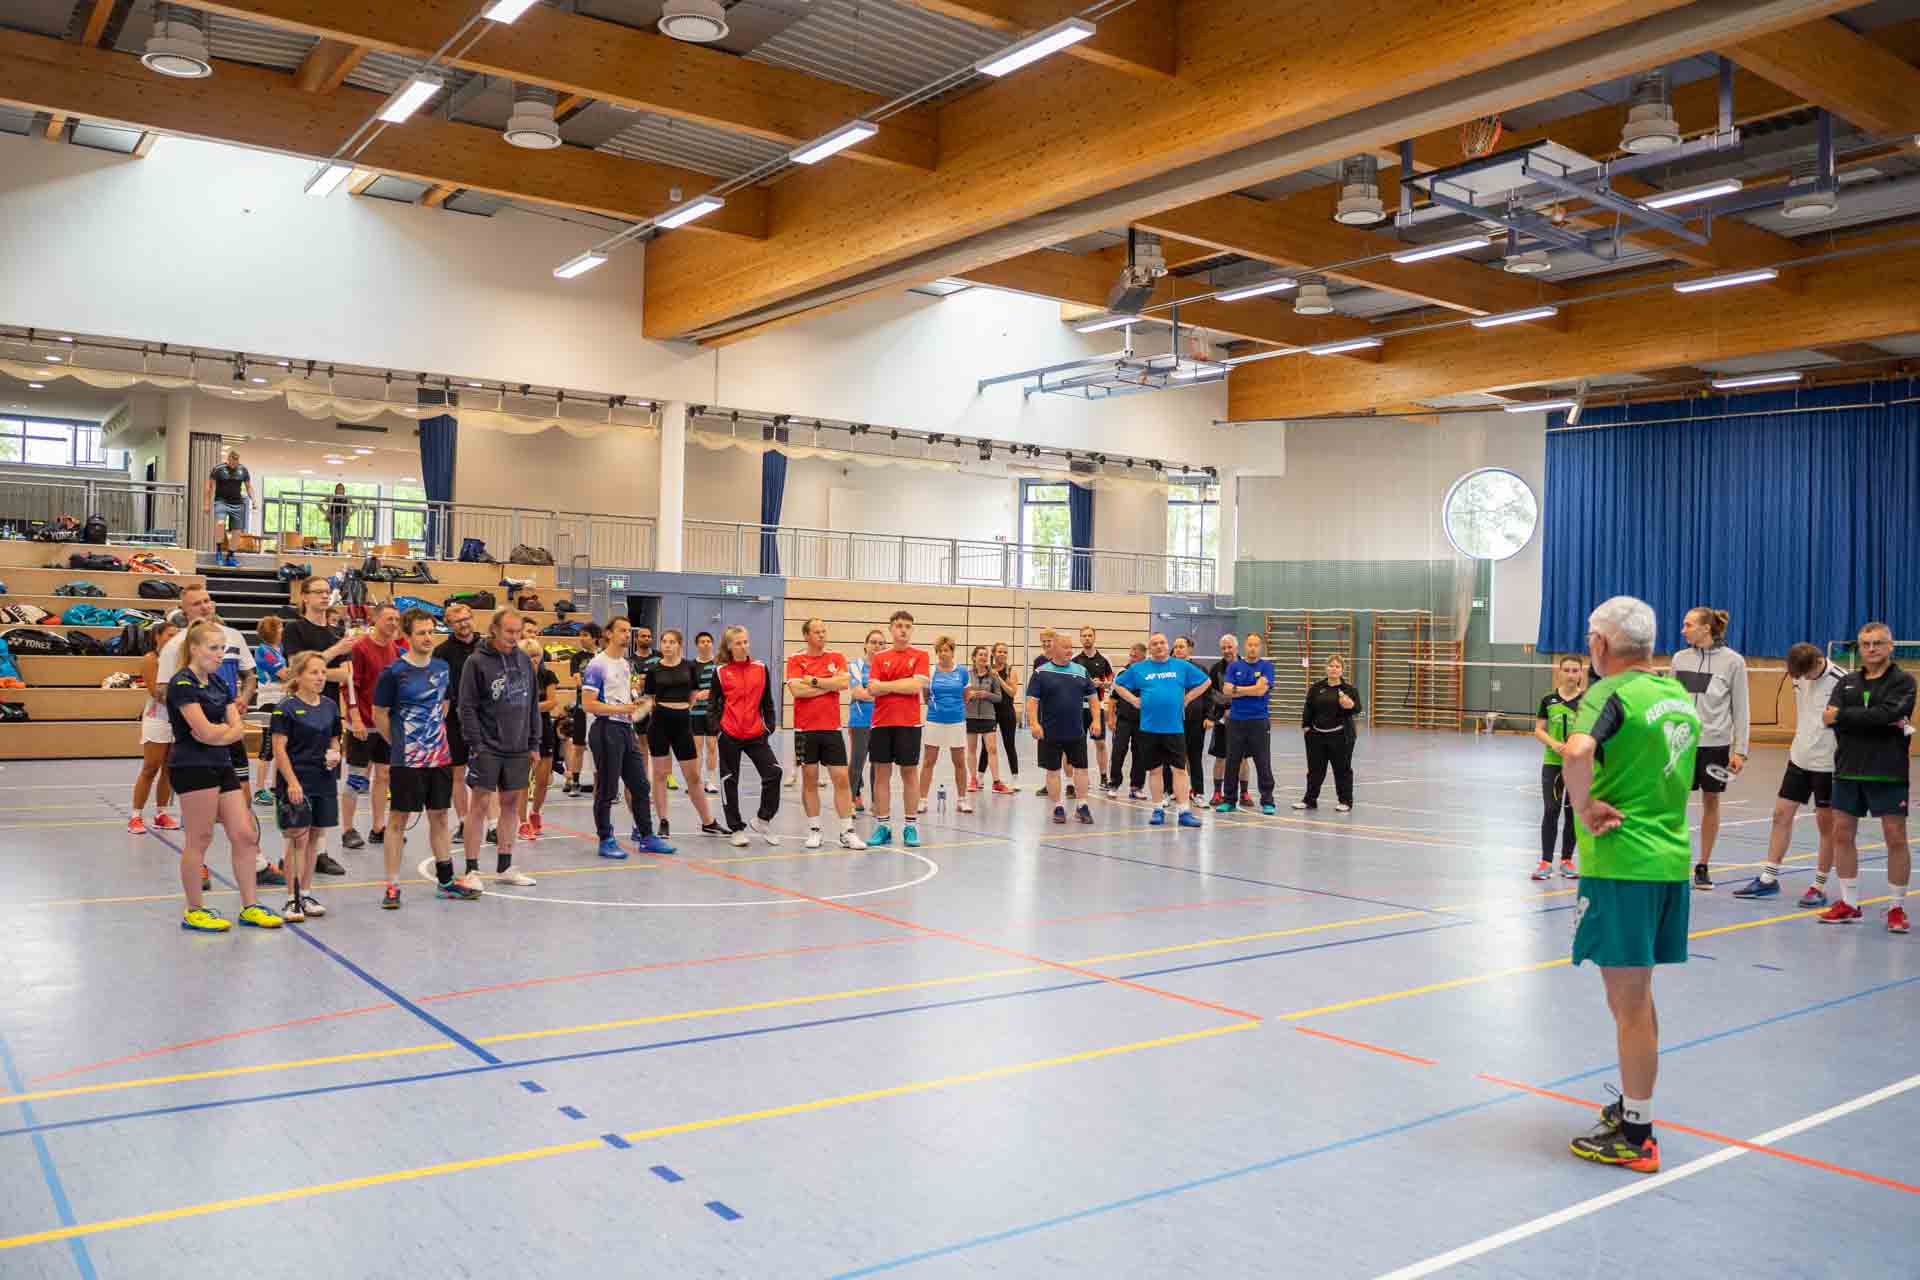 Teilnehmer des Flechtinger Schlosspokalturniers 2023 (Badmintonturnier) ausgerichtet vom Flechtinger SV in der Ohreland Haldensleben - Flechtinger Schlosspokalturnier 2023 - Badminton Flechtingen